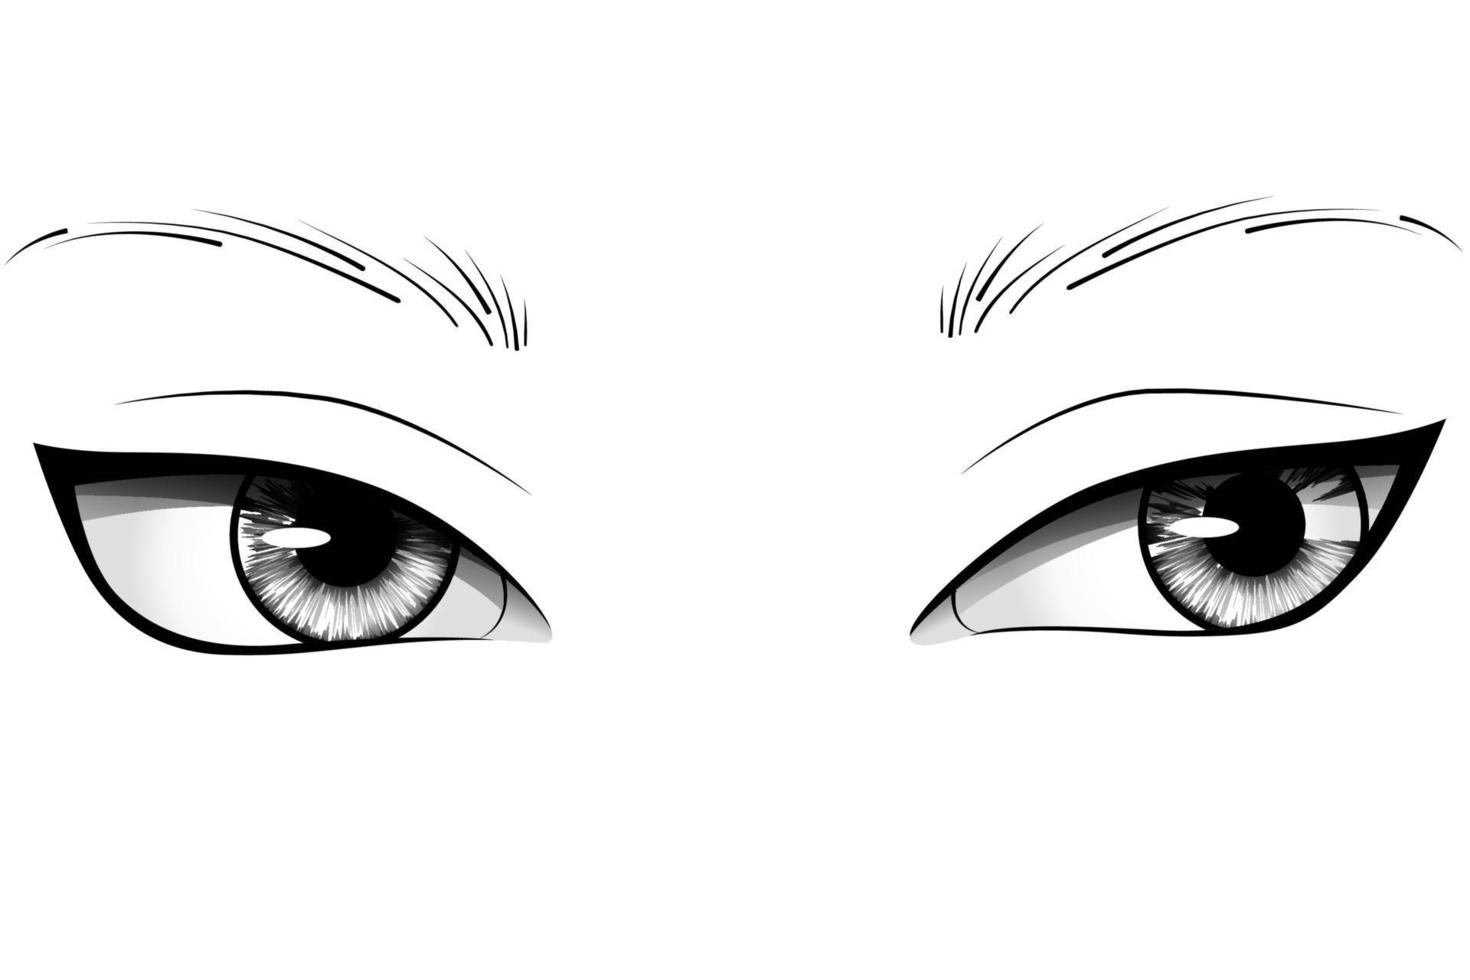 mão desenhada cartoon olhos de mulher com íris, sobrancelhas e cílios detalhados. ilustração vetorial de tipografia vetor